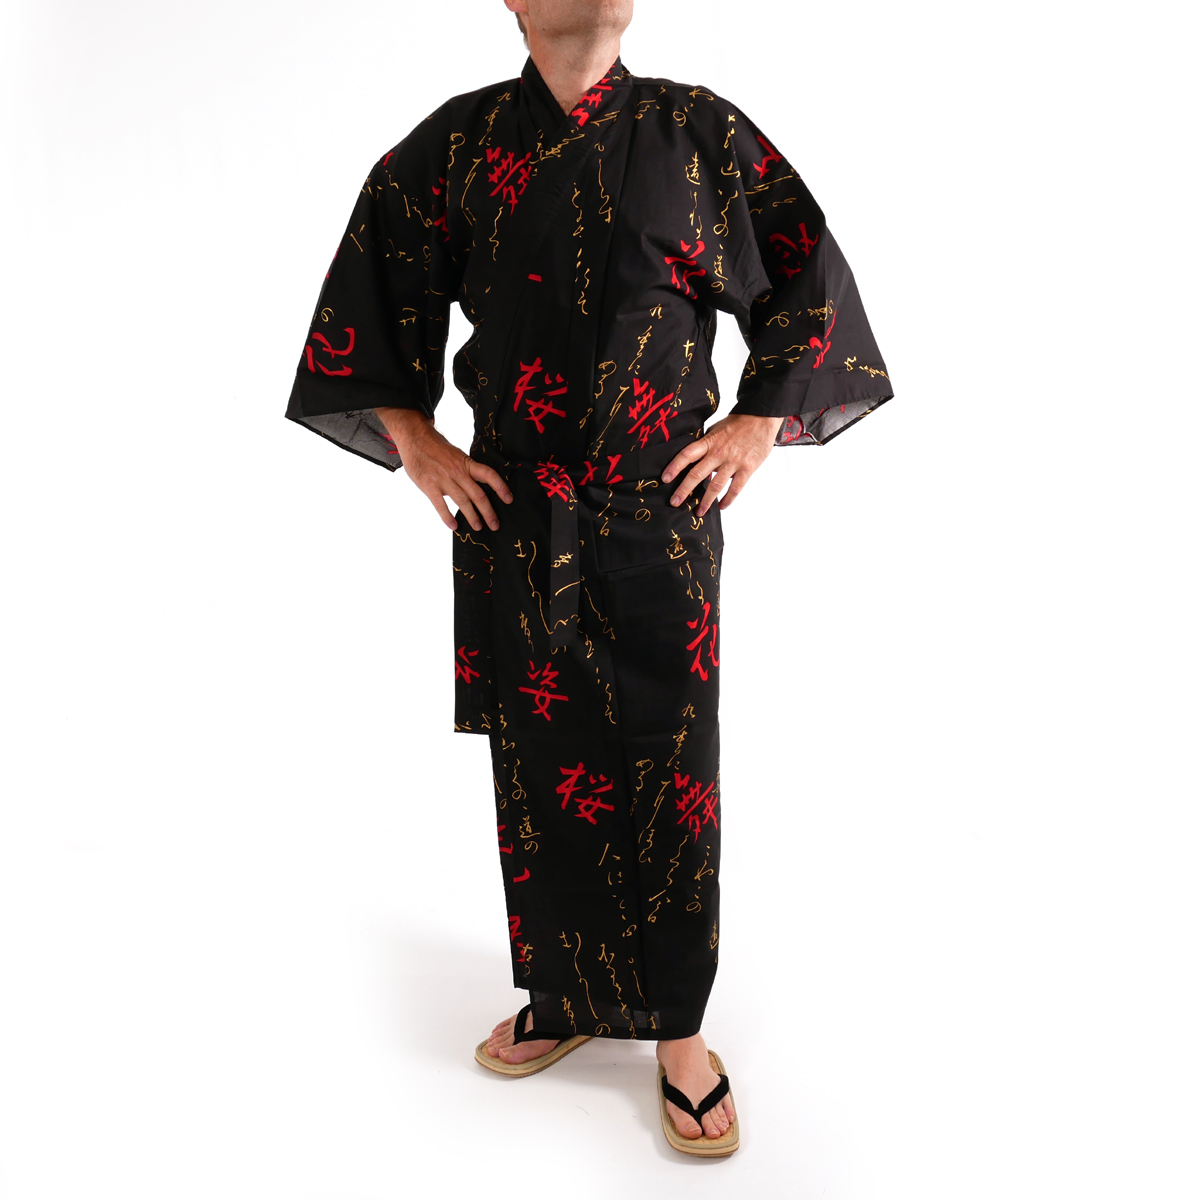 Мужчина в кимоно